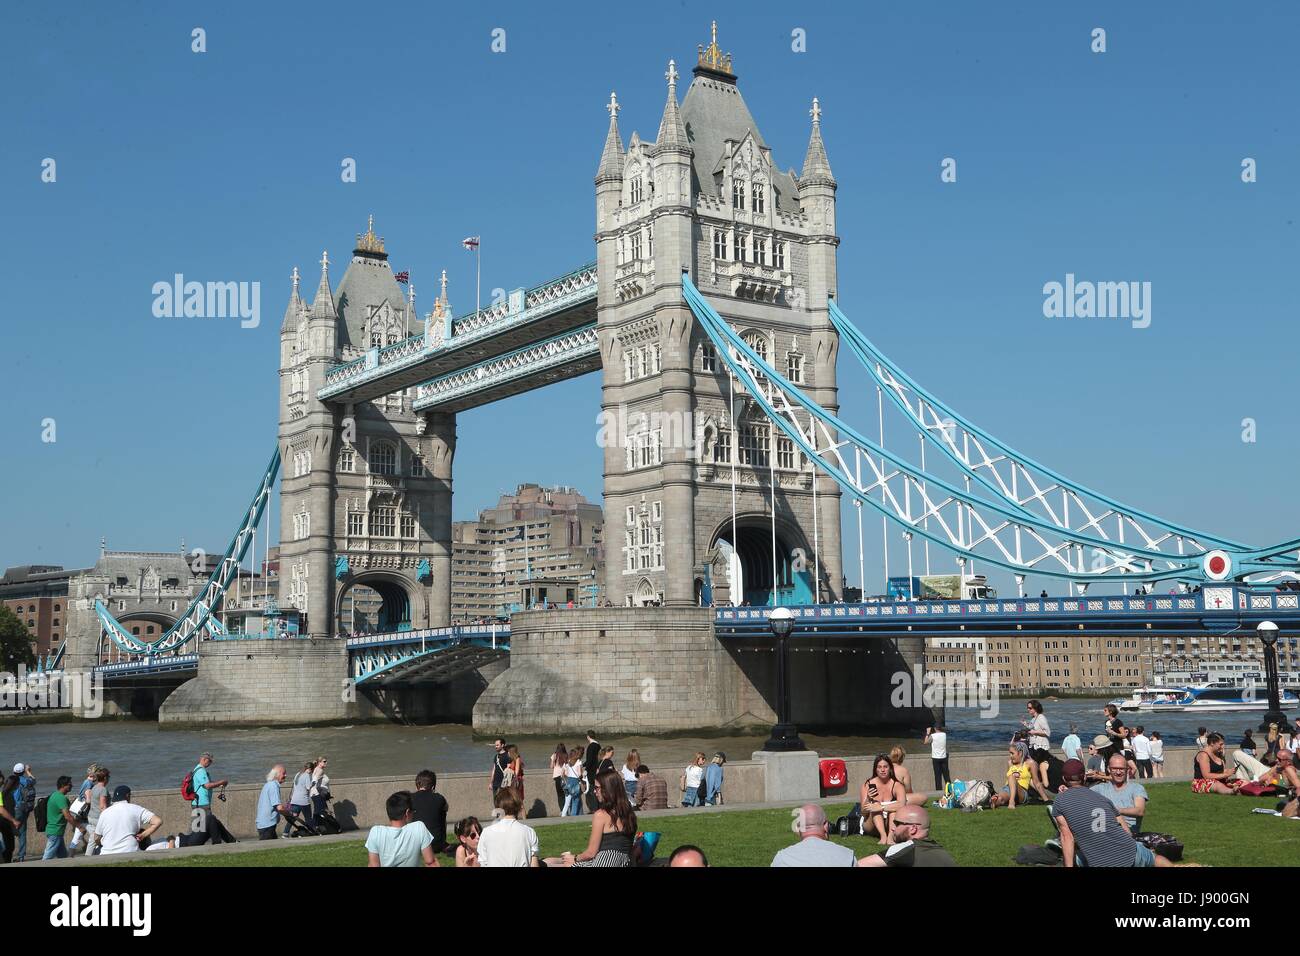 El icónico Tower Bridge de Londres, uno de los edificios más famosos del mundo, que fue construido hace más de 120 años. Foto de stock